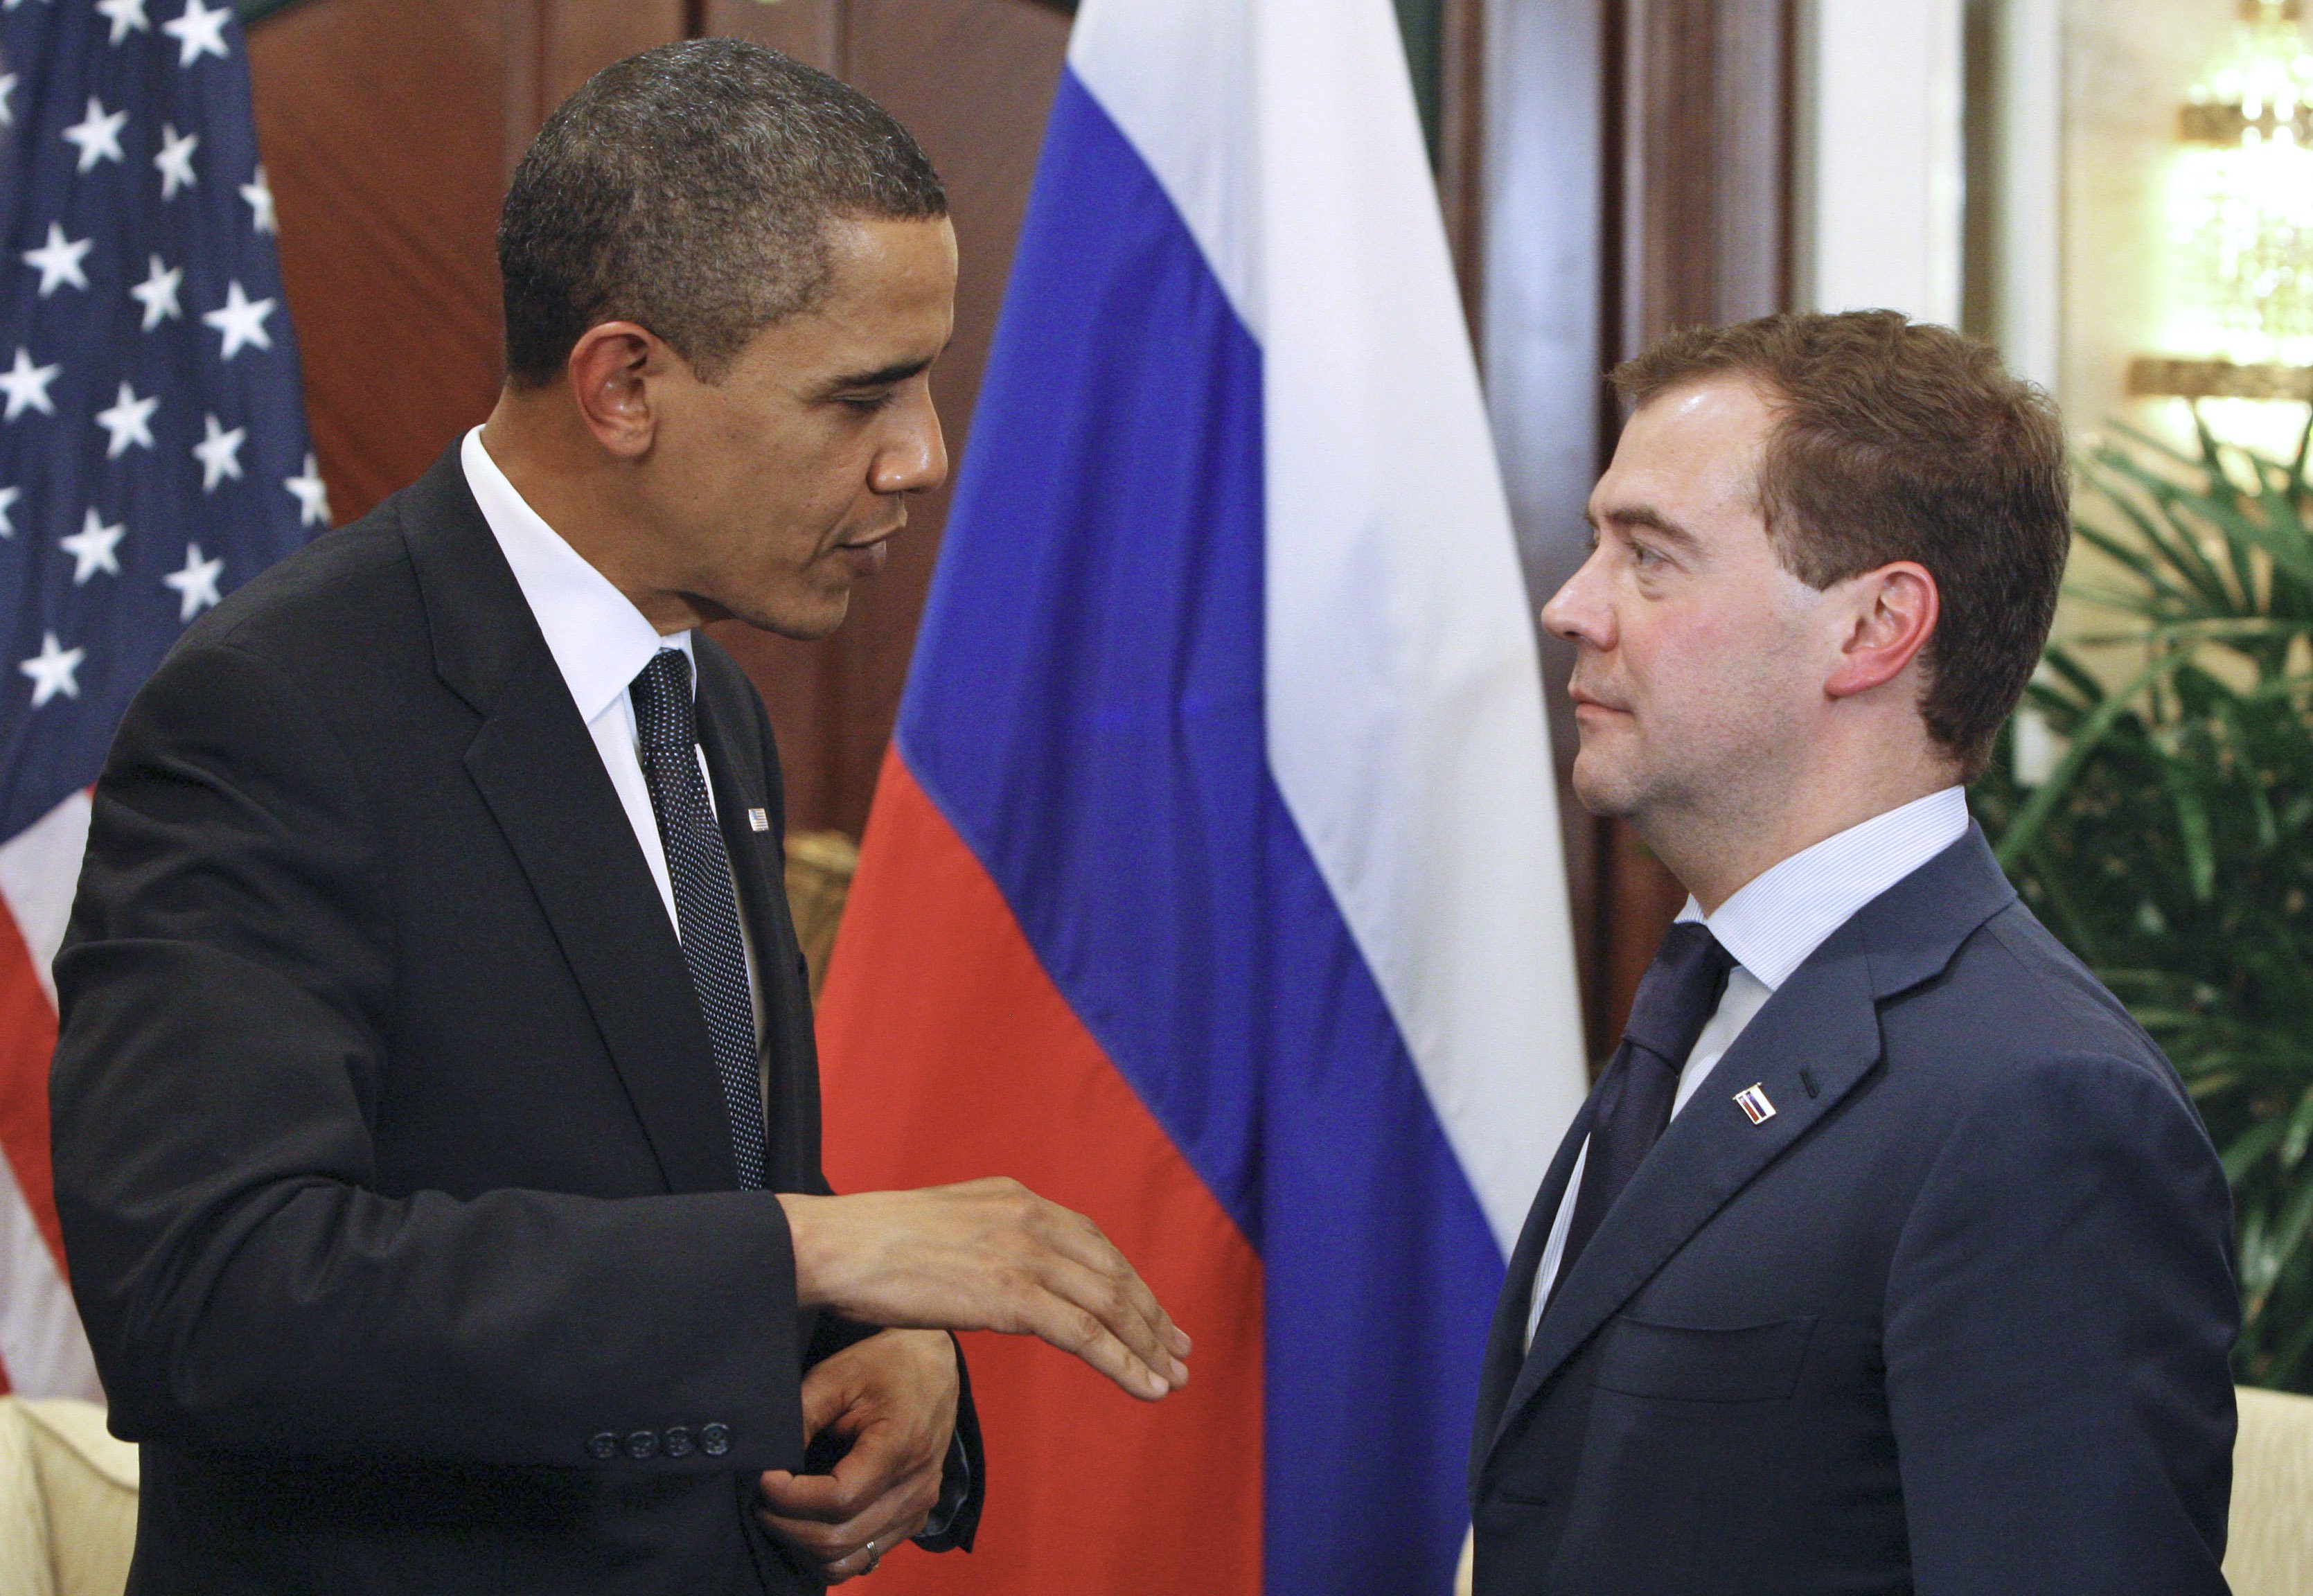 Nu misstänker vissa att spiondramat är överdrivet. Här ser ni ländernas två presidenter, Barack Obama och Dmitrij Medvedev.